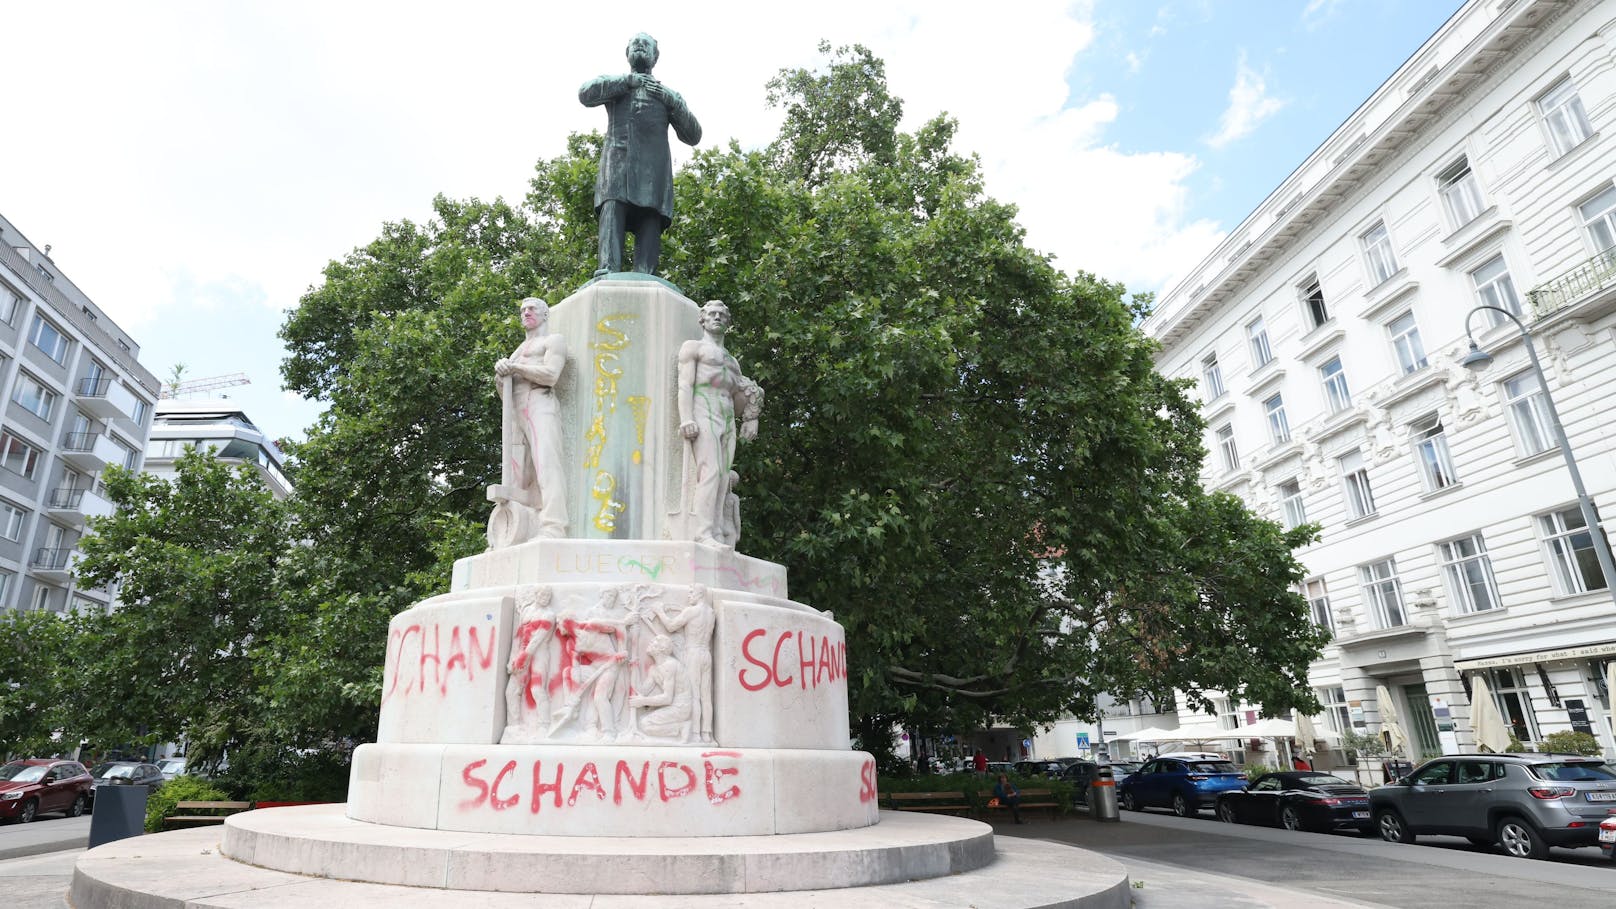 "Schande" haben Unbekannte auf das Karl-Lueger-Denkmal geschrieben. Ein offener Brief an Bürgermeister Michael Ludwig (SPÖ) fordert: weg mit dem Denkmal.